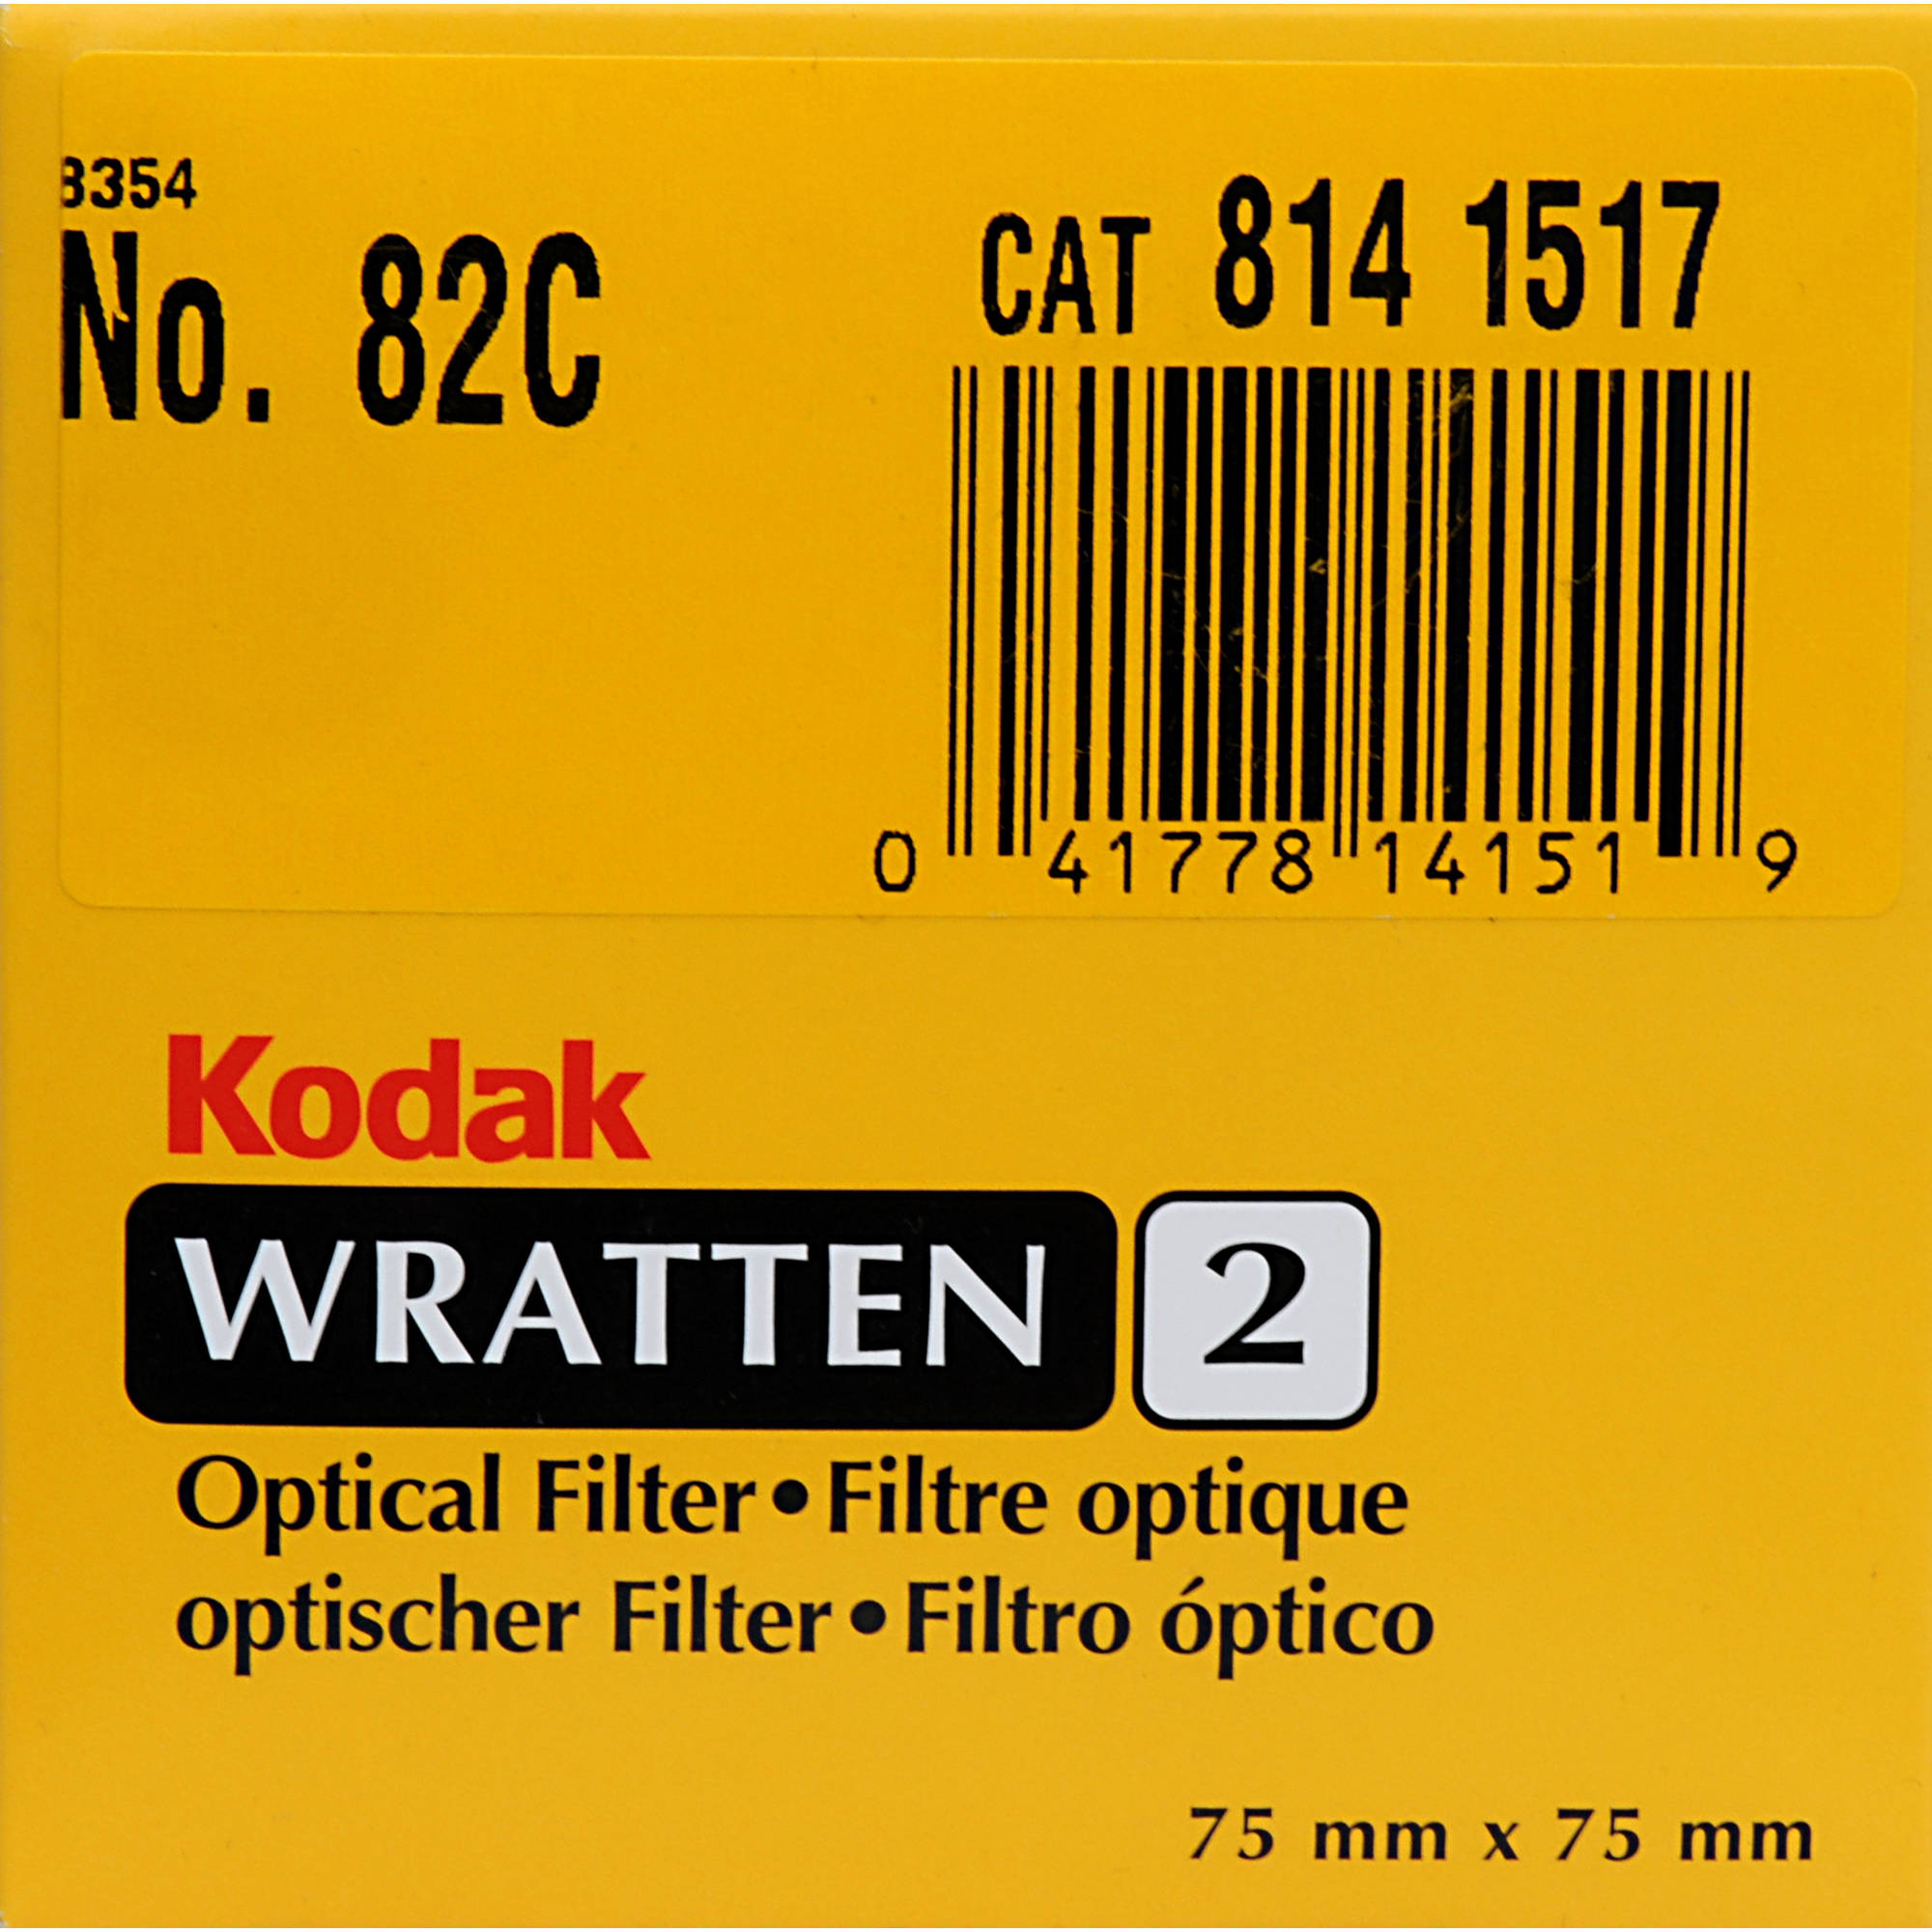 Wratten Filter Chart